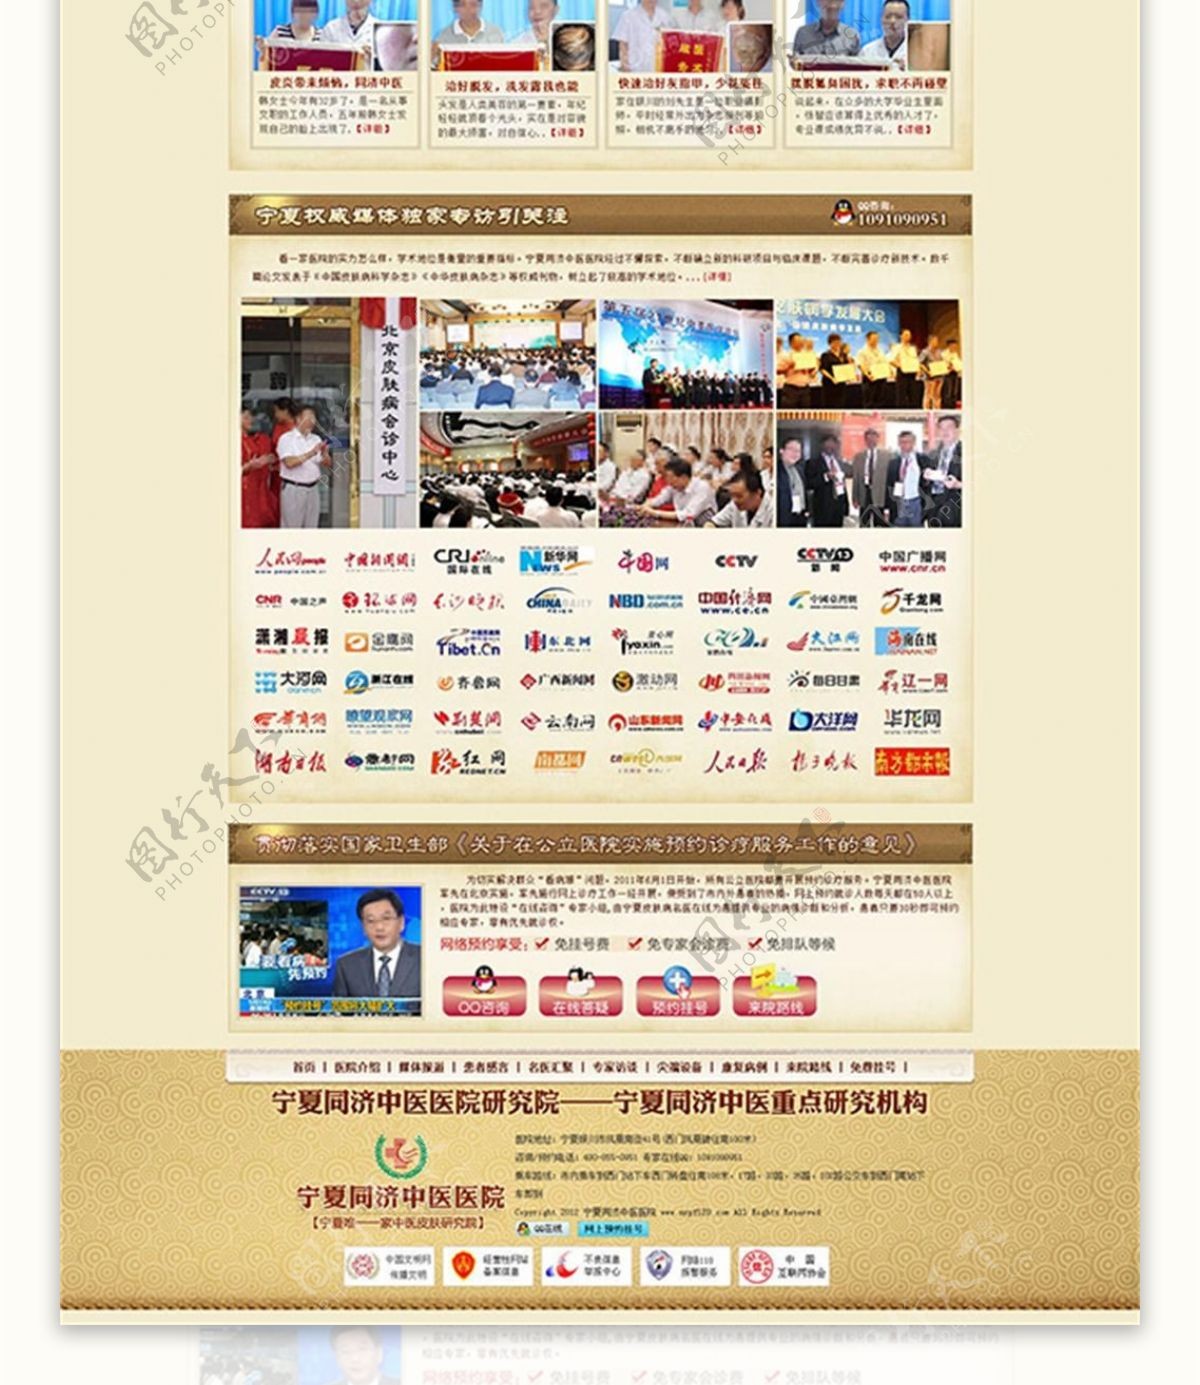 中国风医疗网页